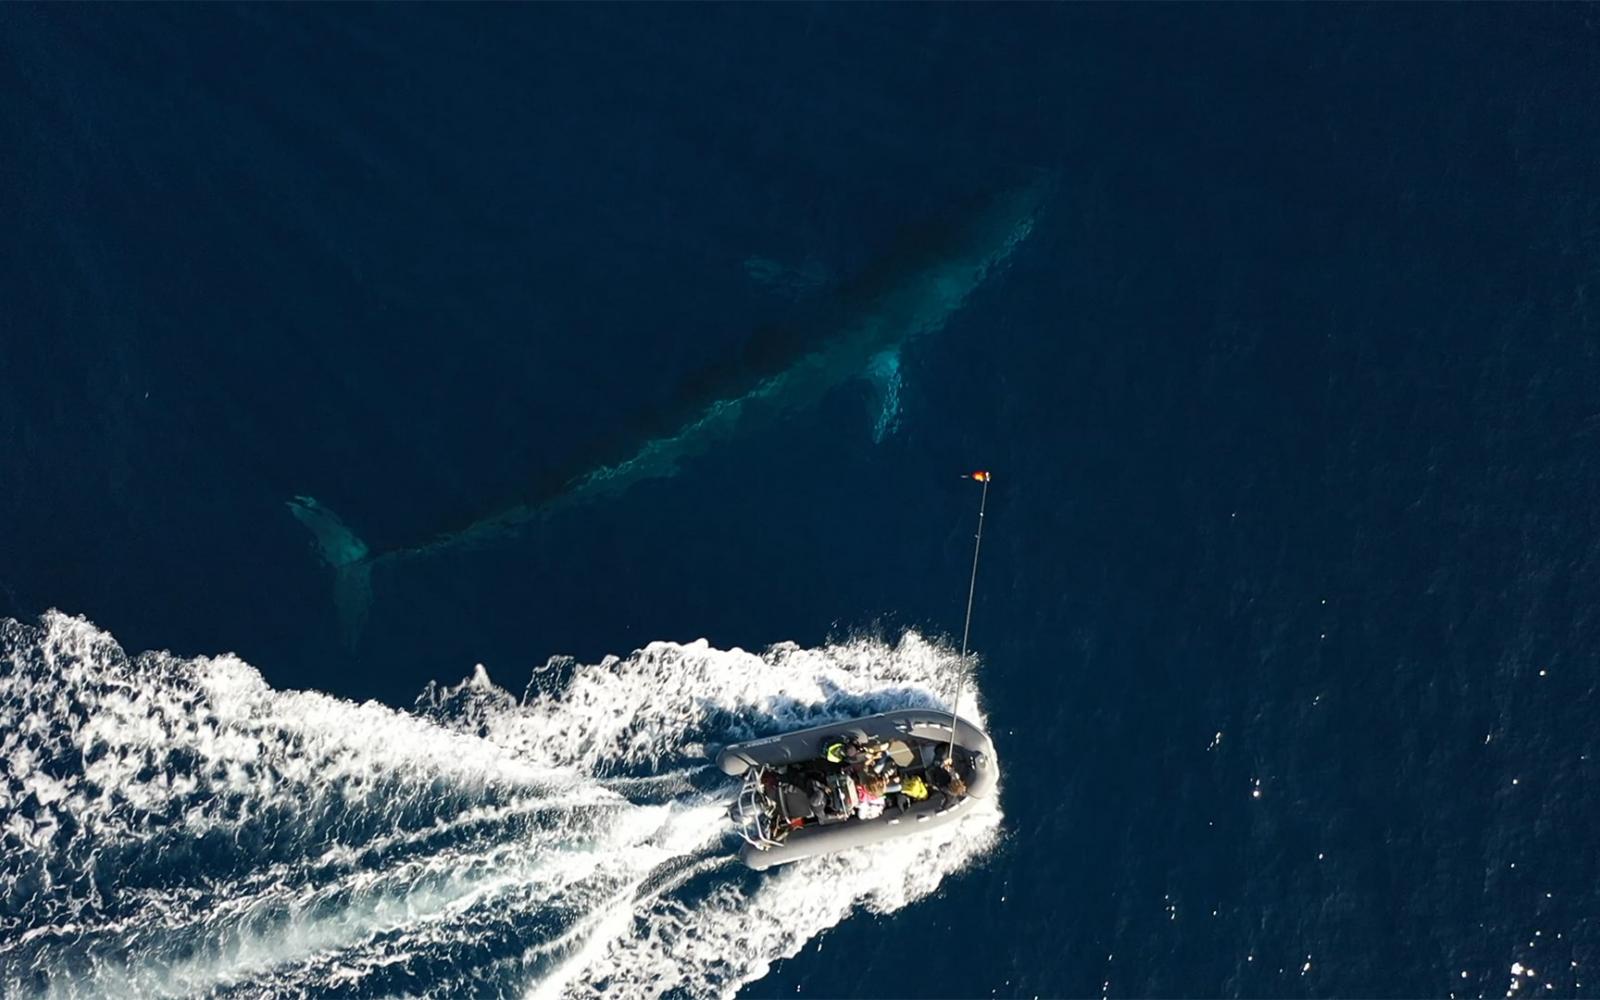 Balisage d'une baleine (rorqual) en Méditerranée, vue du ciel